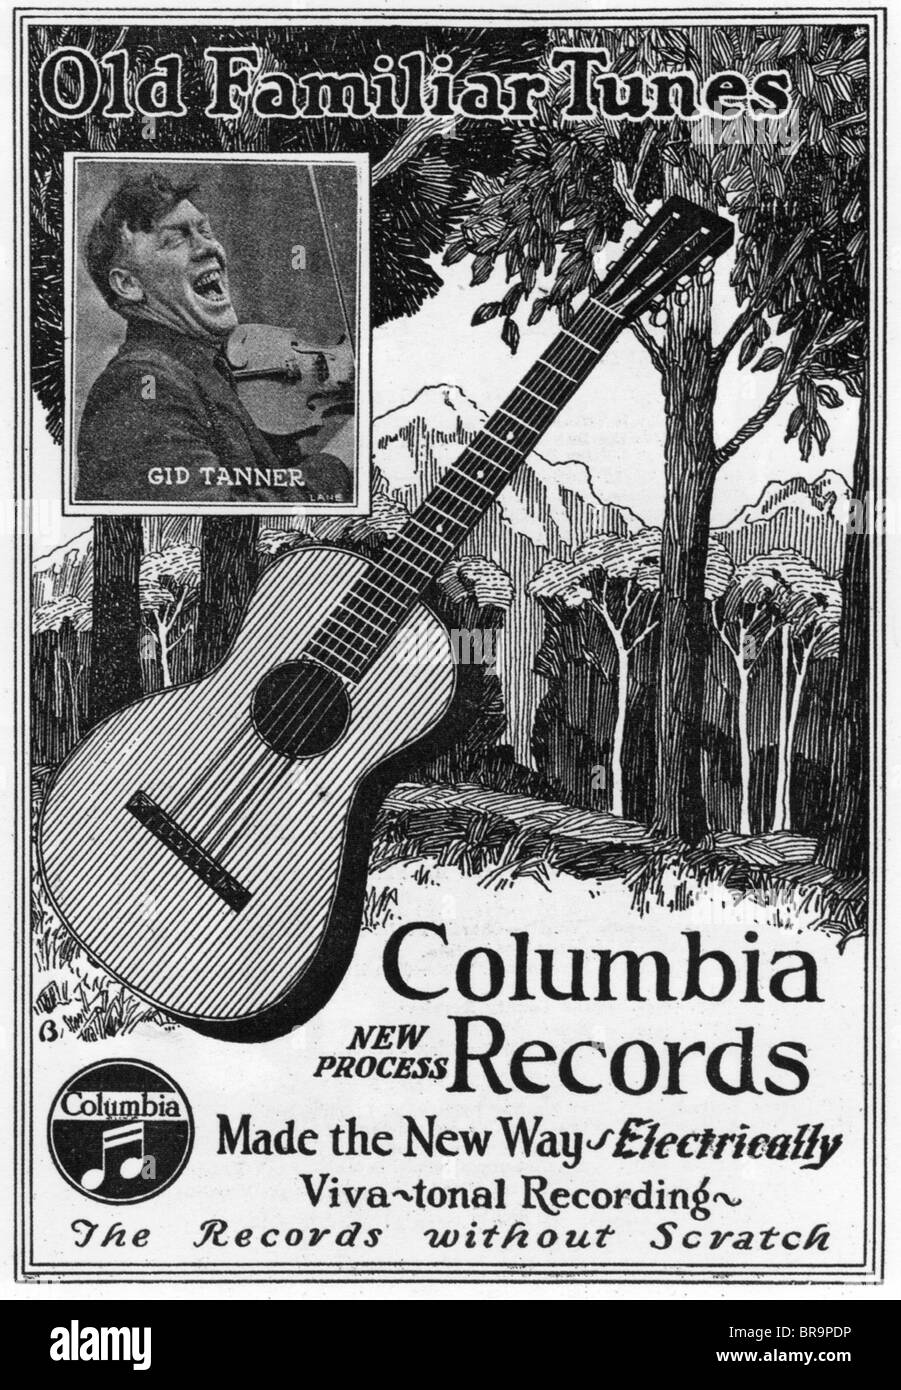 COUNTRY und WESTERN Musik "Alte vertraute Melodien" war der Name auf diese  1927-Anzeige verwendet, um zu beschreiben was C & W wurde Stockfotografie -  Alamy